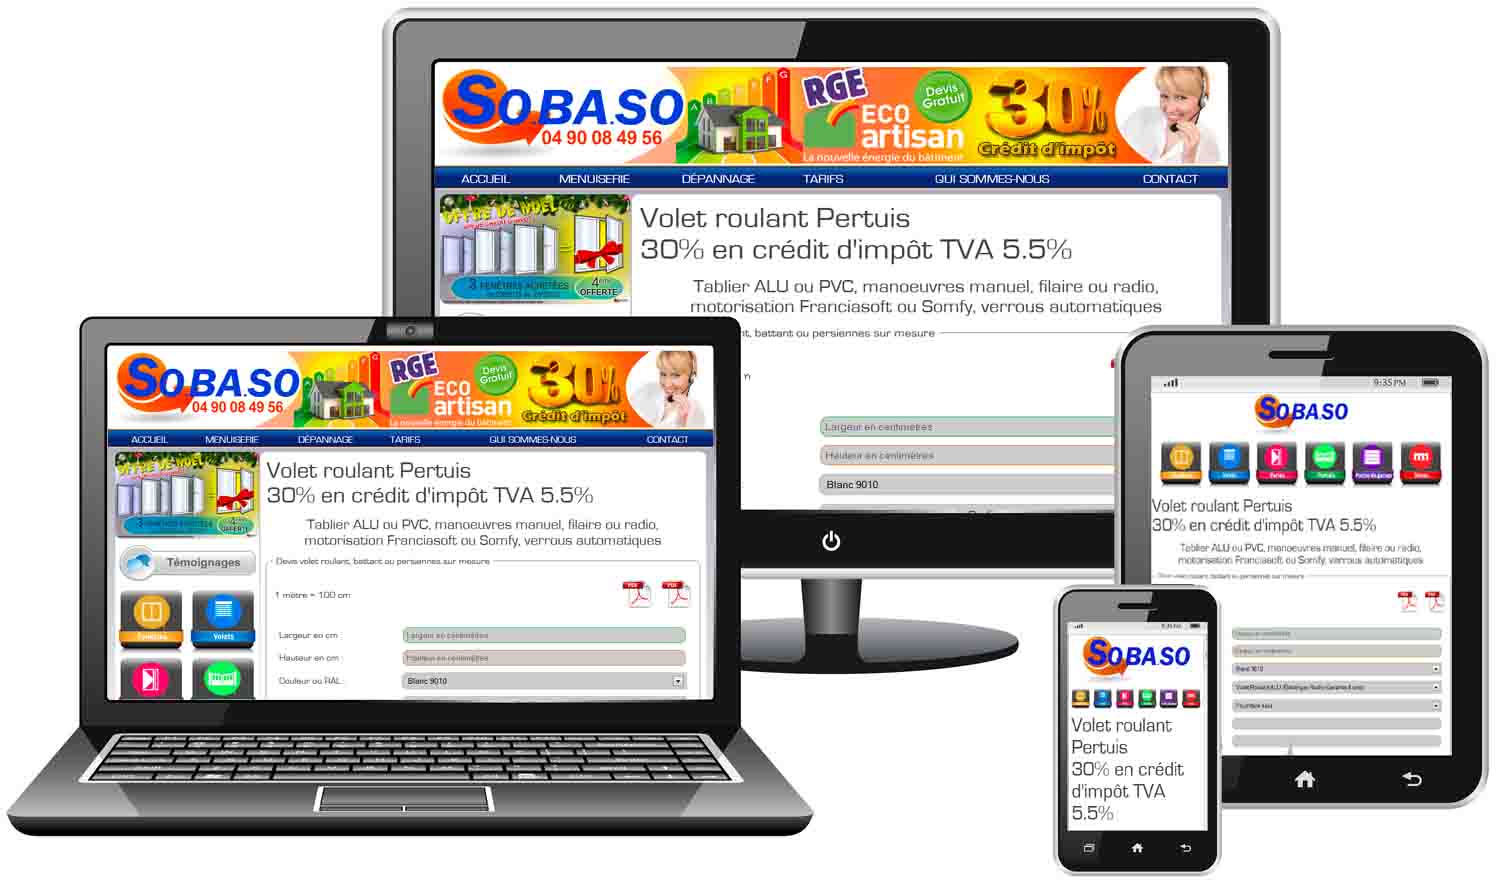 Le site sobaso.fr est multisupport web tablette et mobile